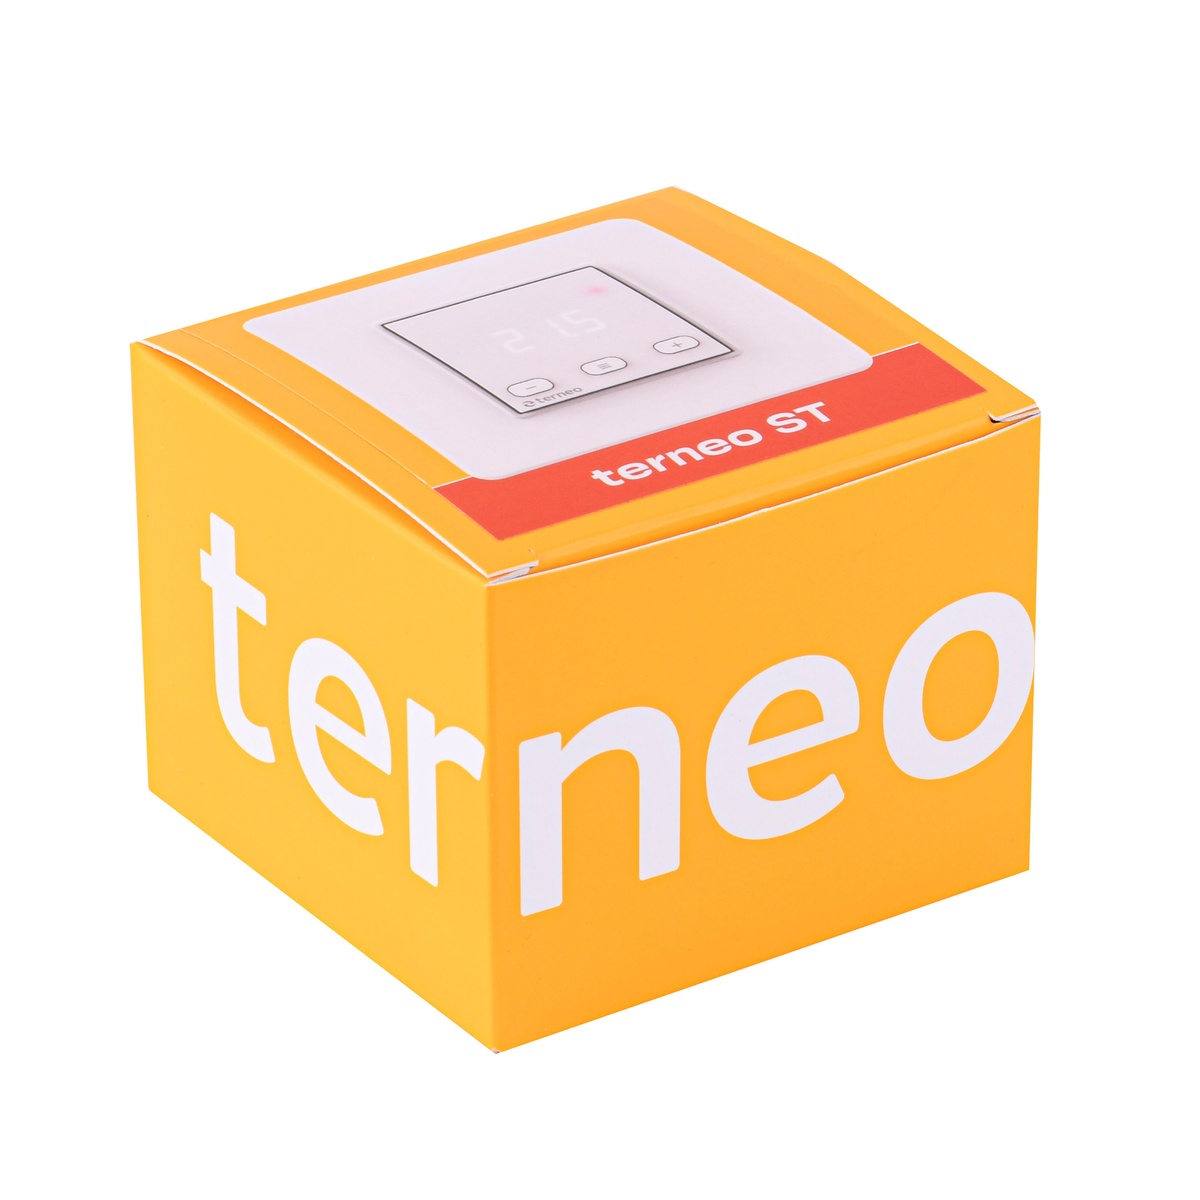 Комнатный терморегулятор TERNEO ST механический с программированием 000027917